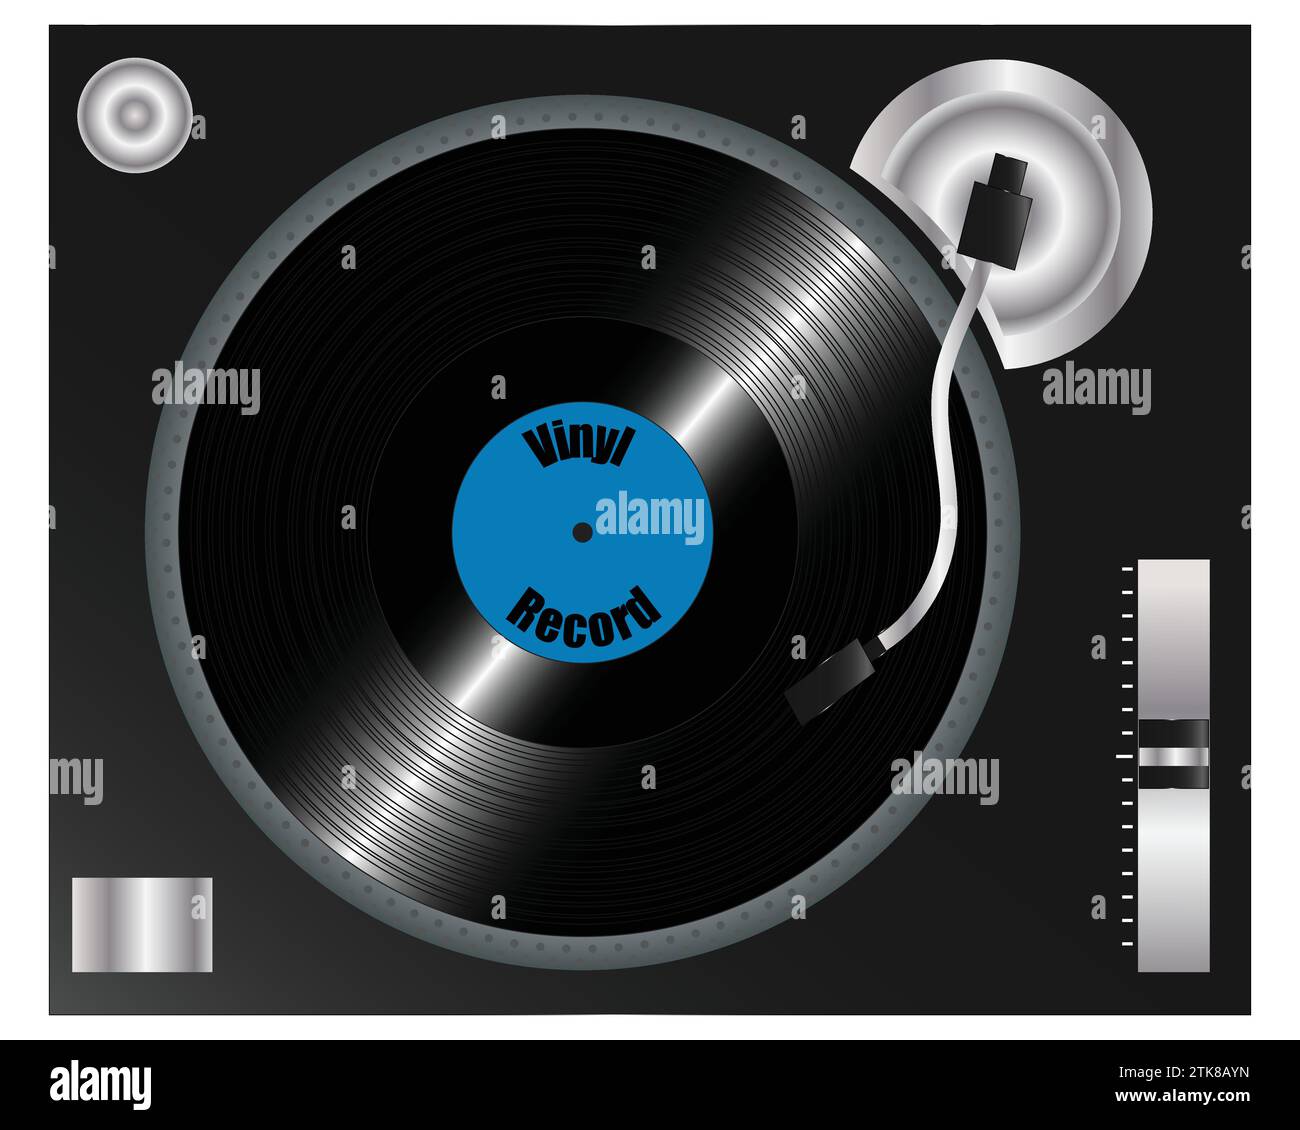 Retro DJ Turntable réaliste avec un disque vinyle de 12 pouces sur le plateau, Top View isolé sur blanc, concept pour Music Entertainment Illustration de Vecteur